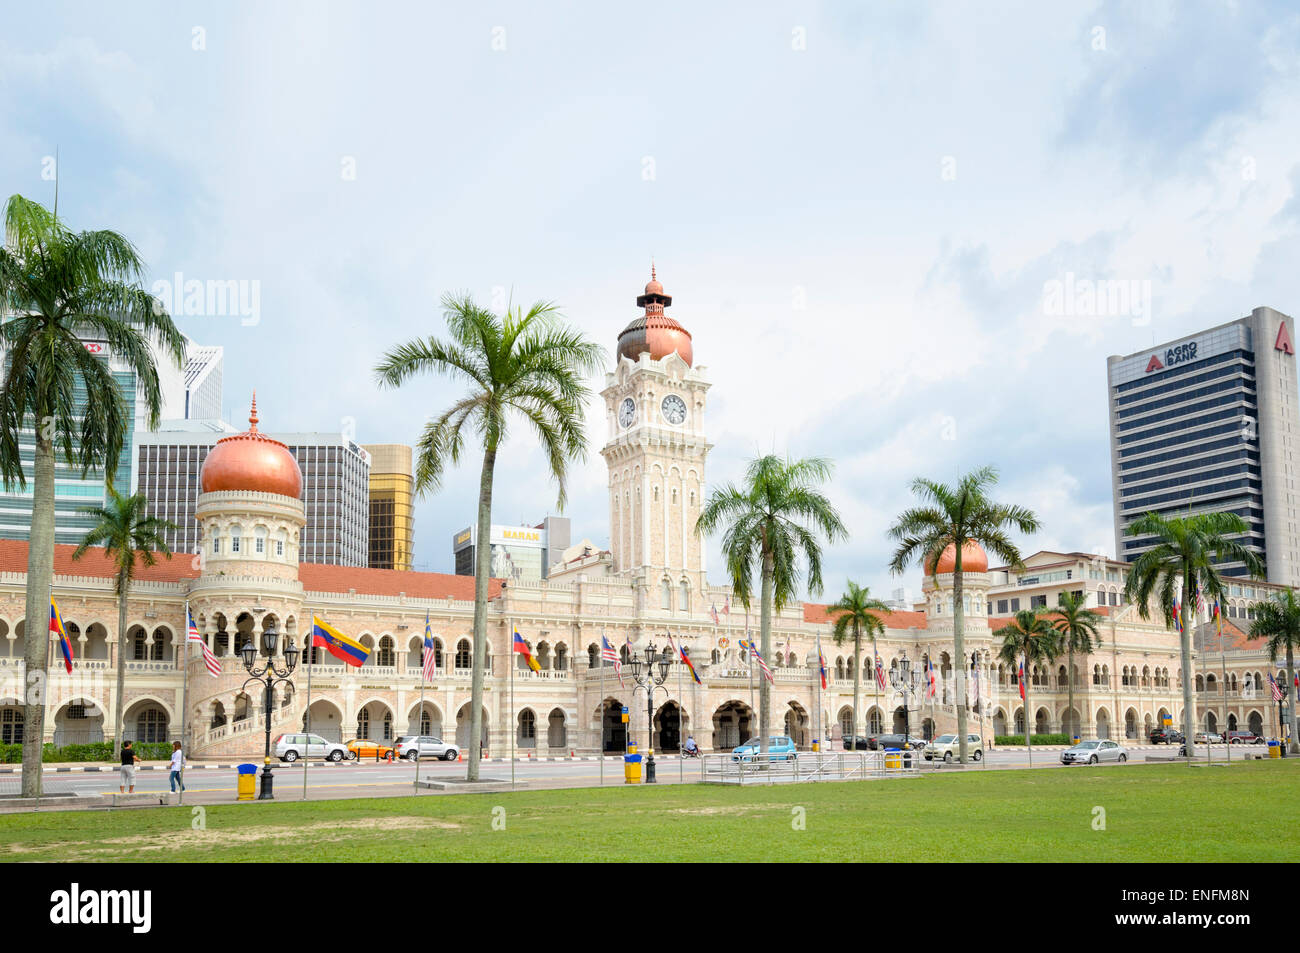 El famoso el edificio Sultán Abdul Samad en el centro de Kuala Lumpur, Malasia, que datan de la época colonial Foto de stock